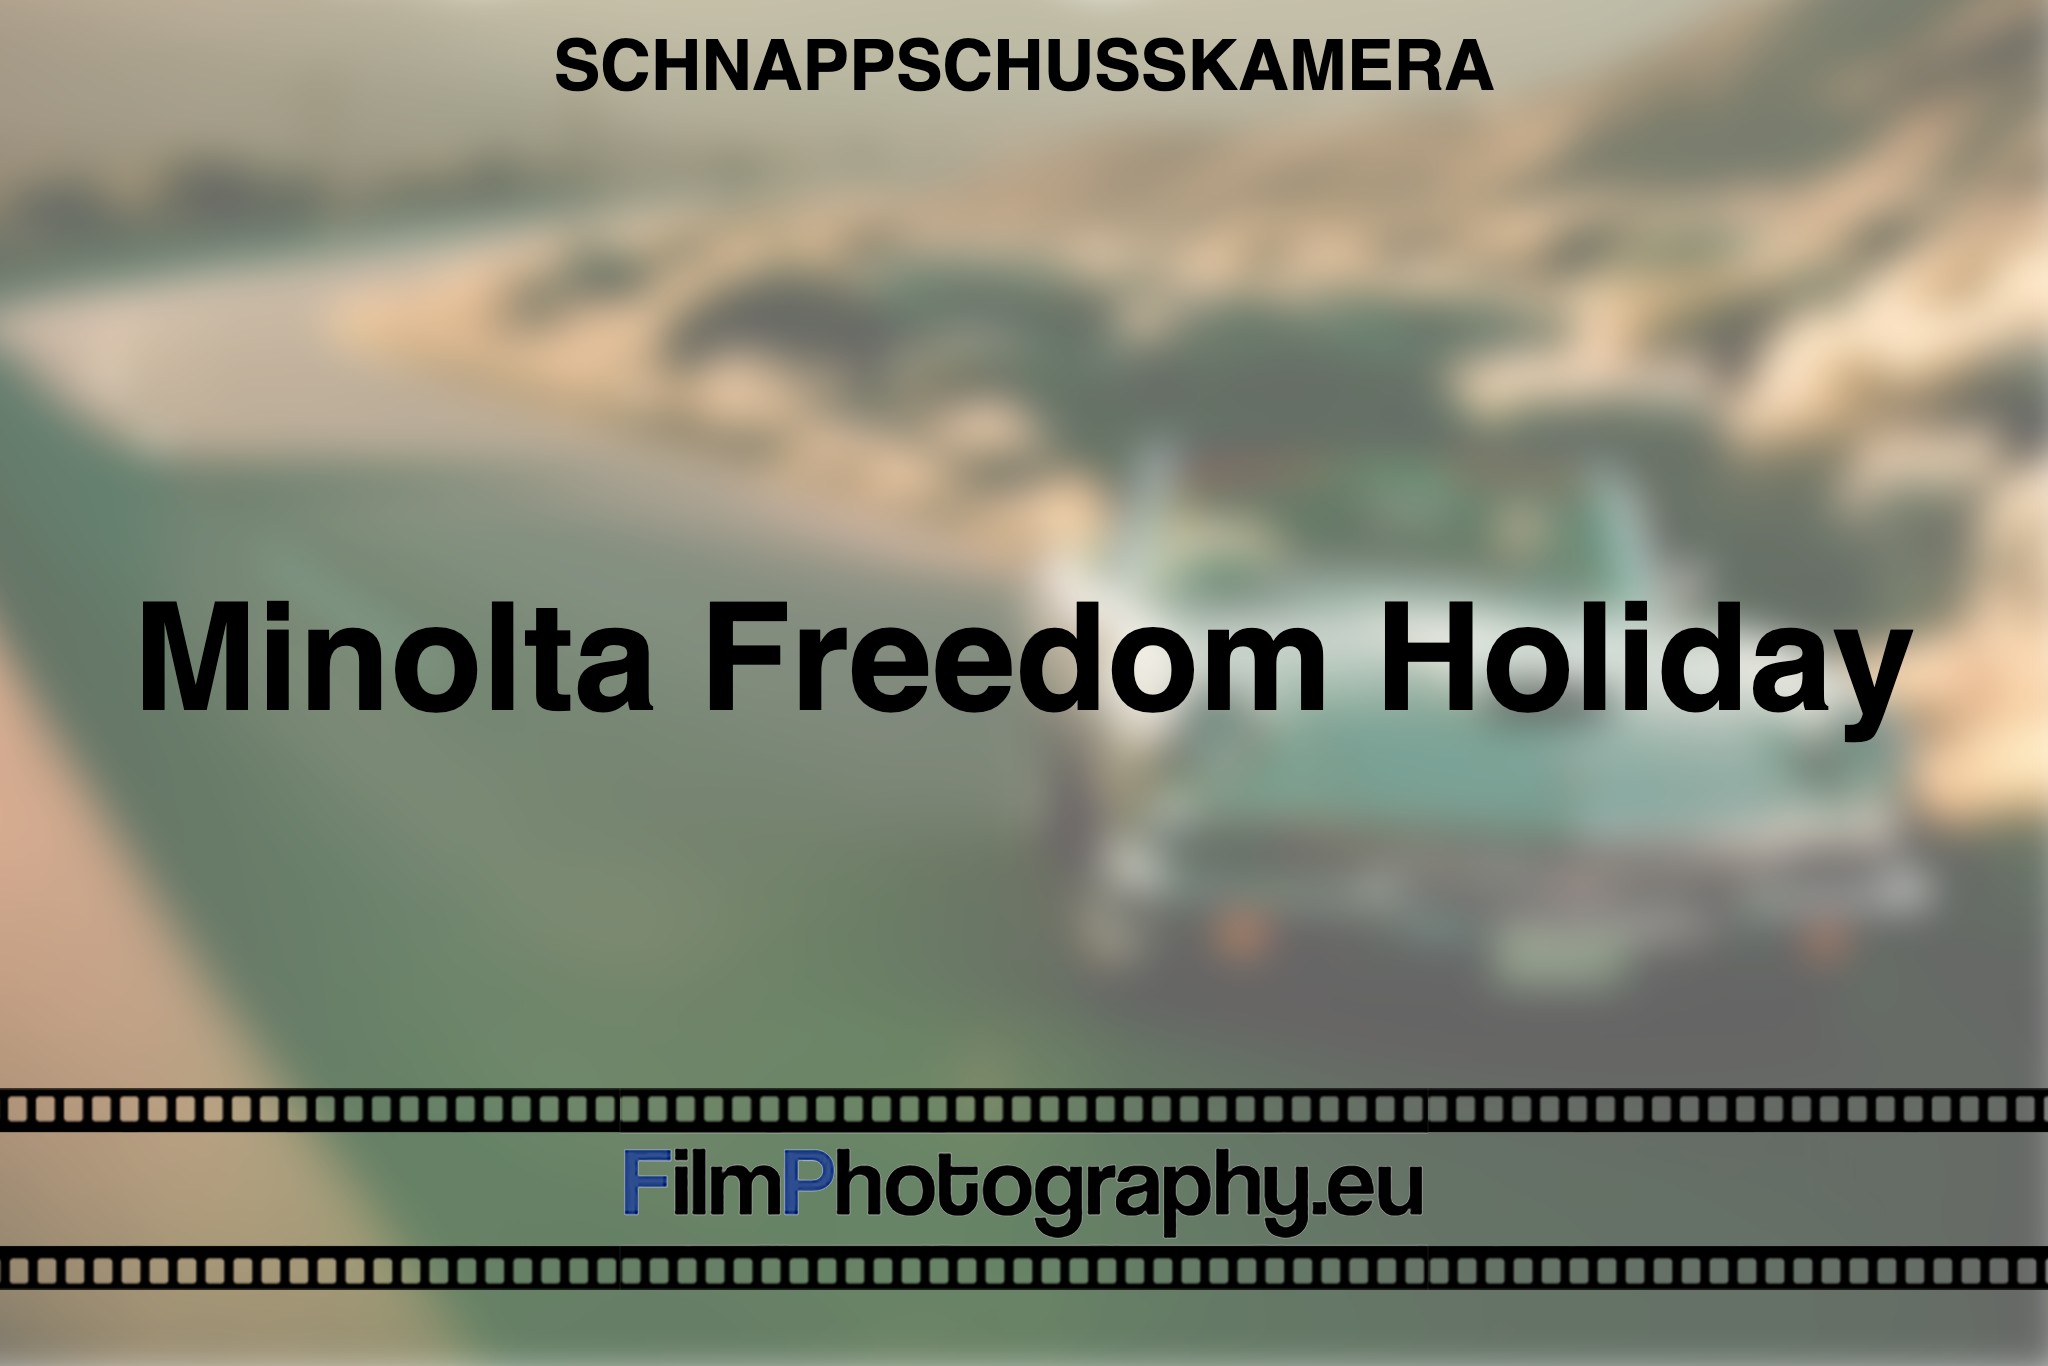 minolta-freedom-holiday-schnappschusskamera-bnv